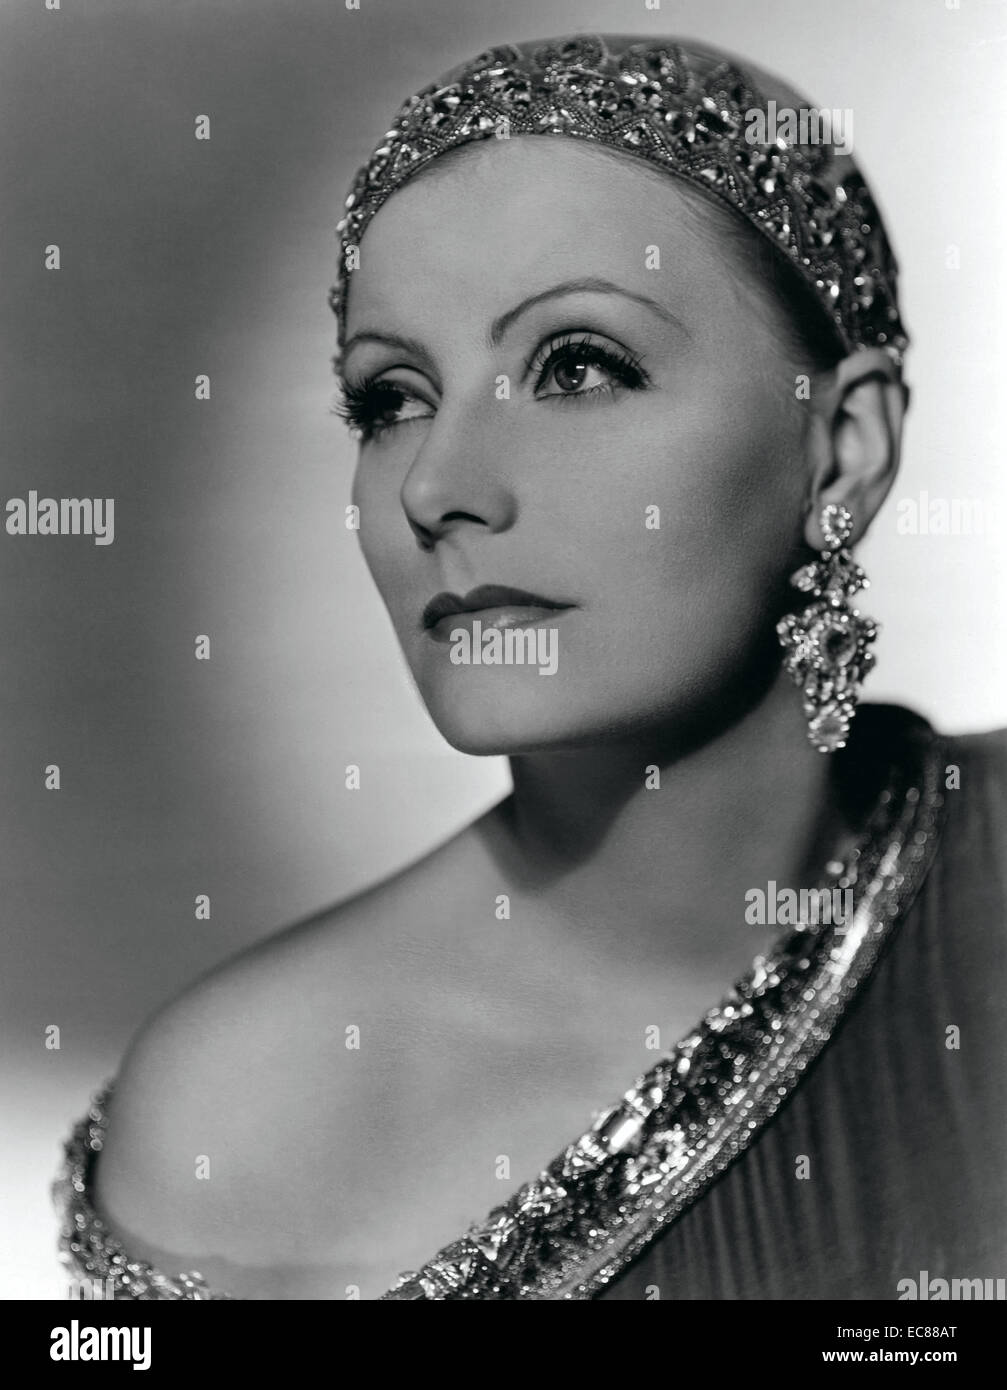 Fotografieren von Greta Garbo (1905 – 1990), schwedische Schauspielerin Hollywoods stillen und klassischen Zeit. Datiert 1931 Stockfoto